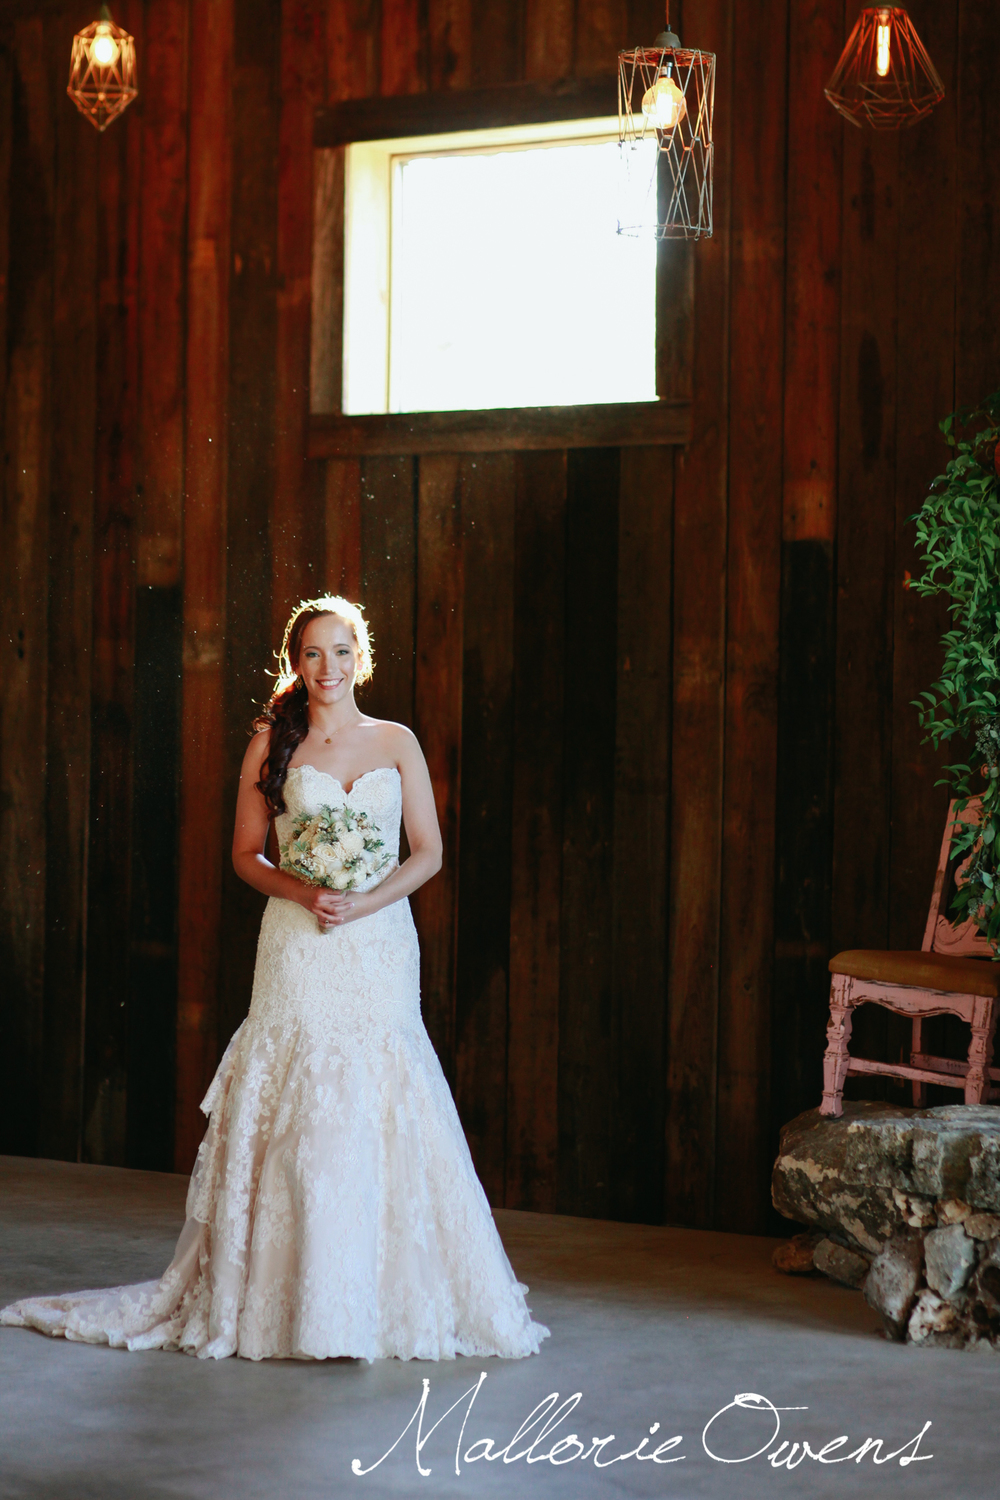 Austin Bridal Portraits | MALLORIE OWENS